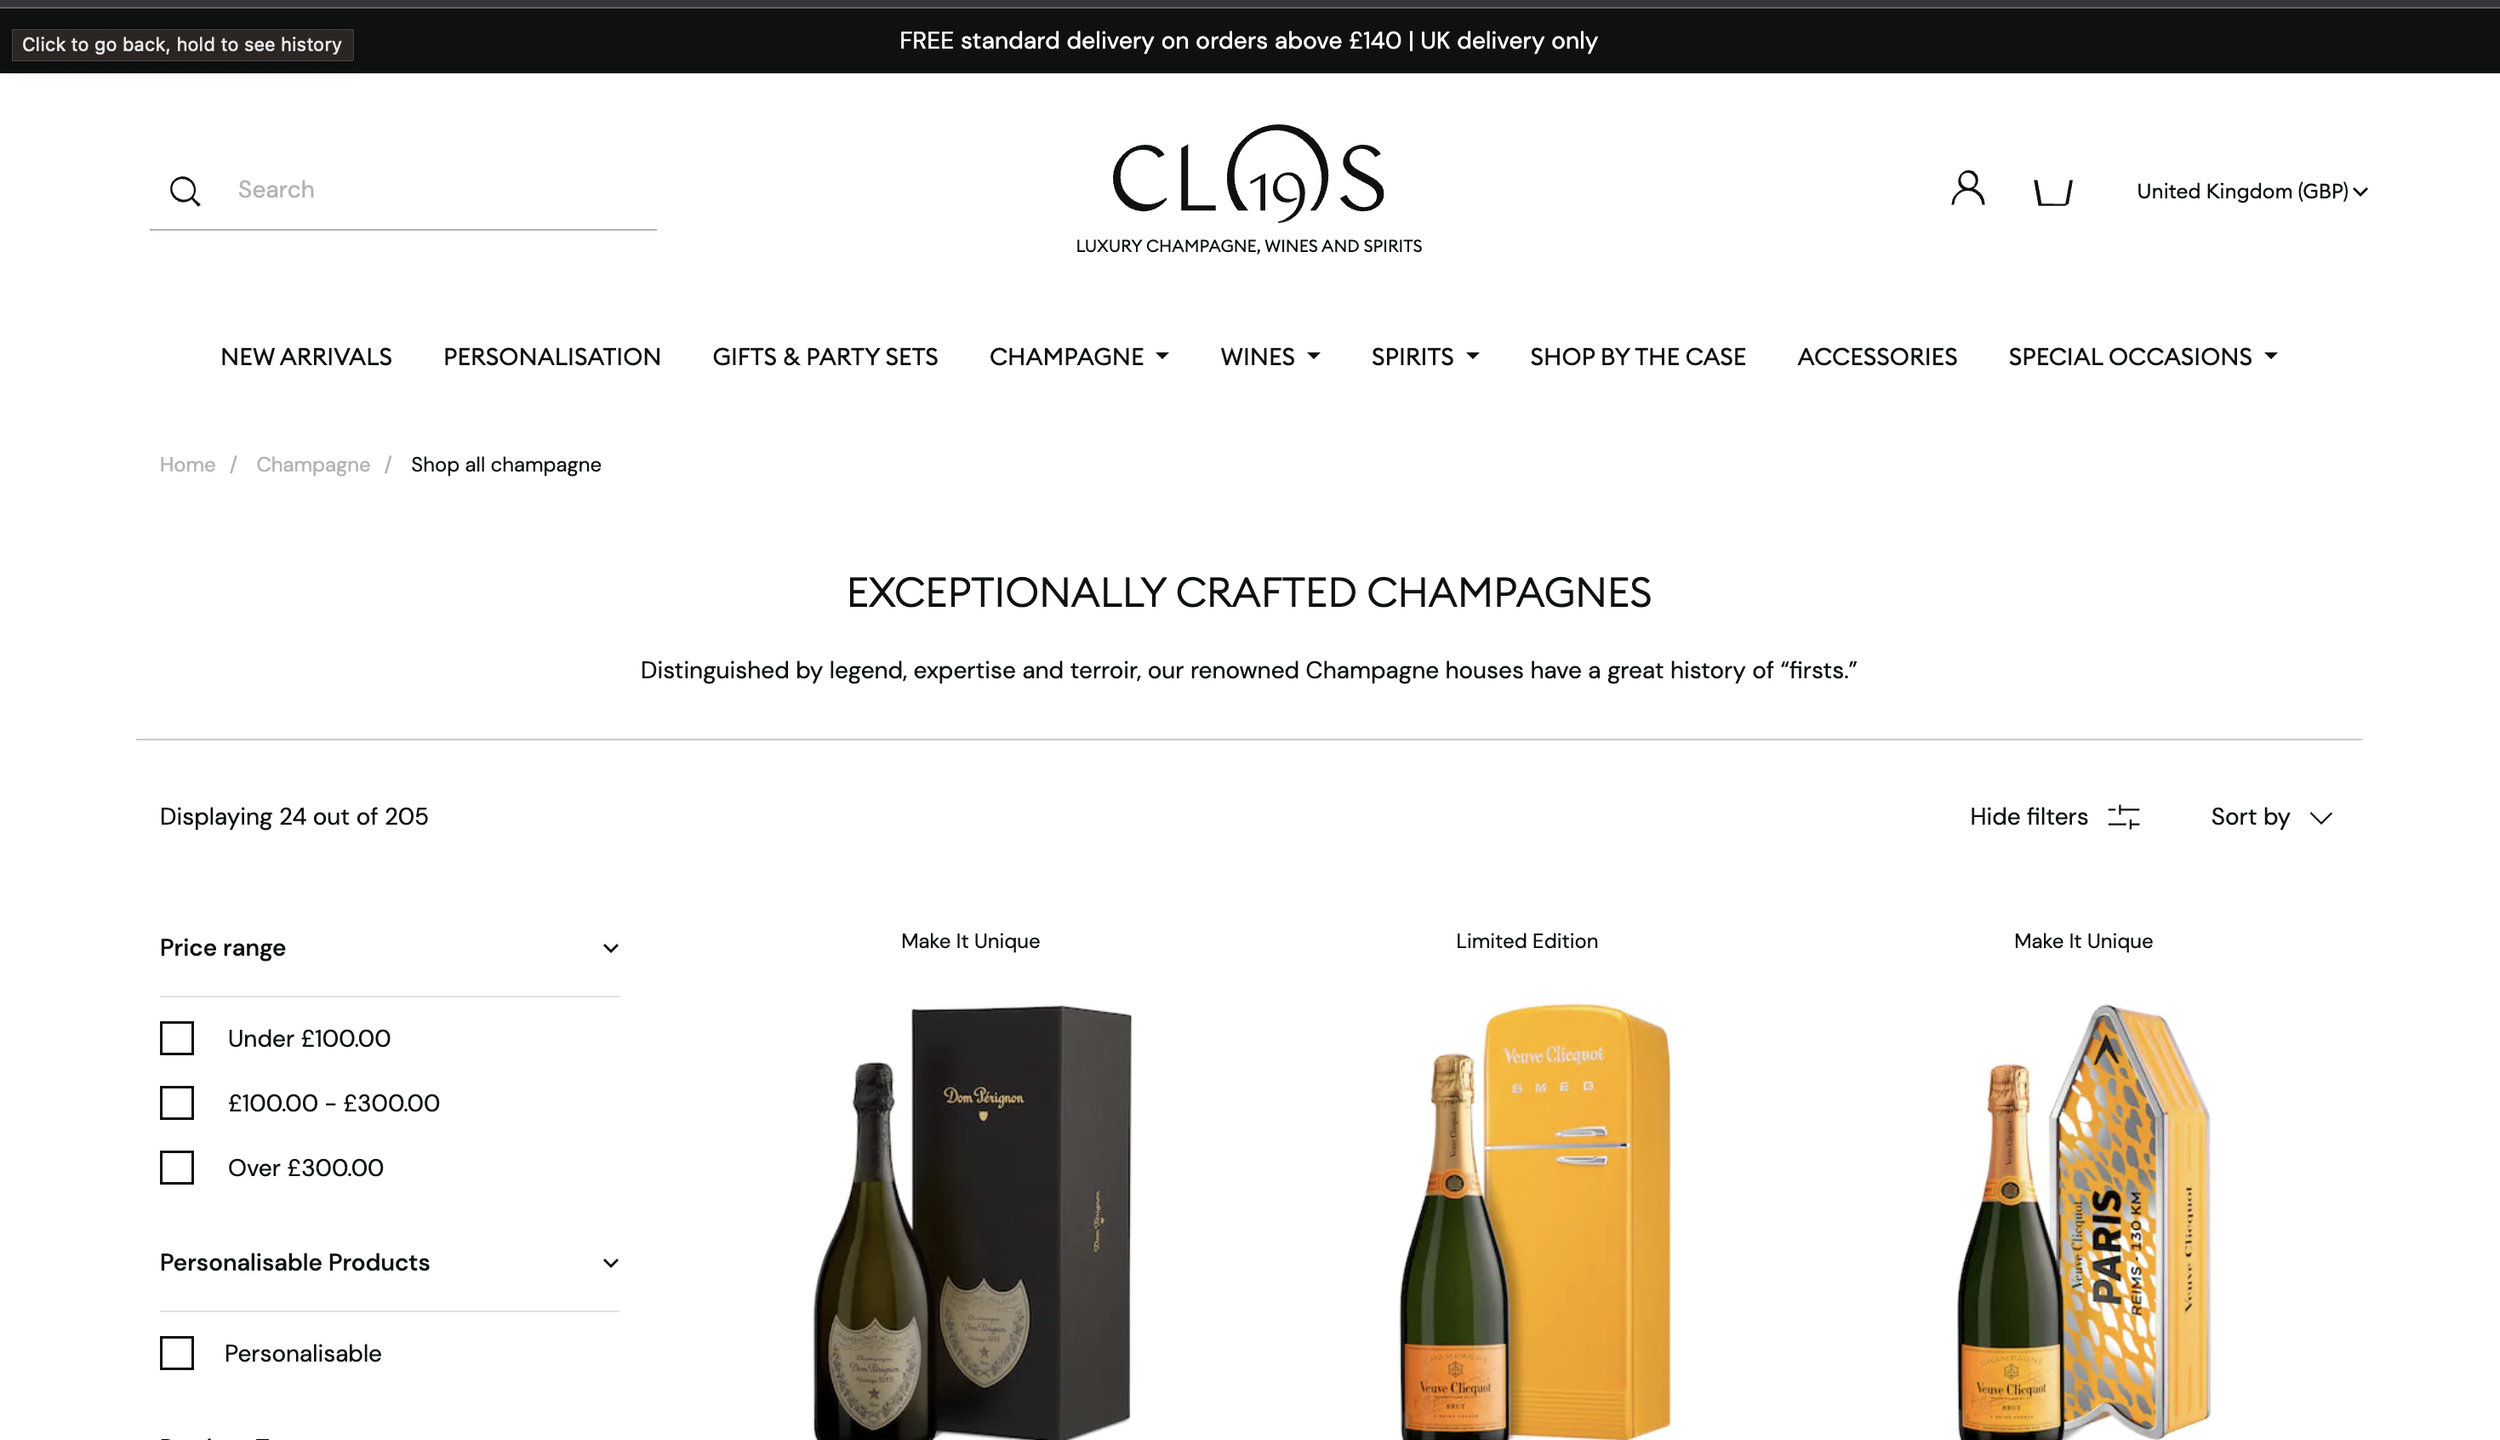 Clos19 - Wines & Spirits - LVMH